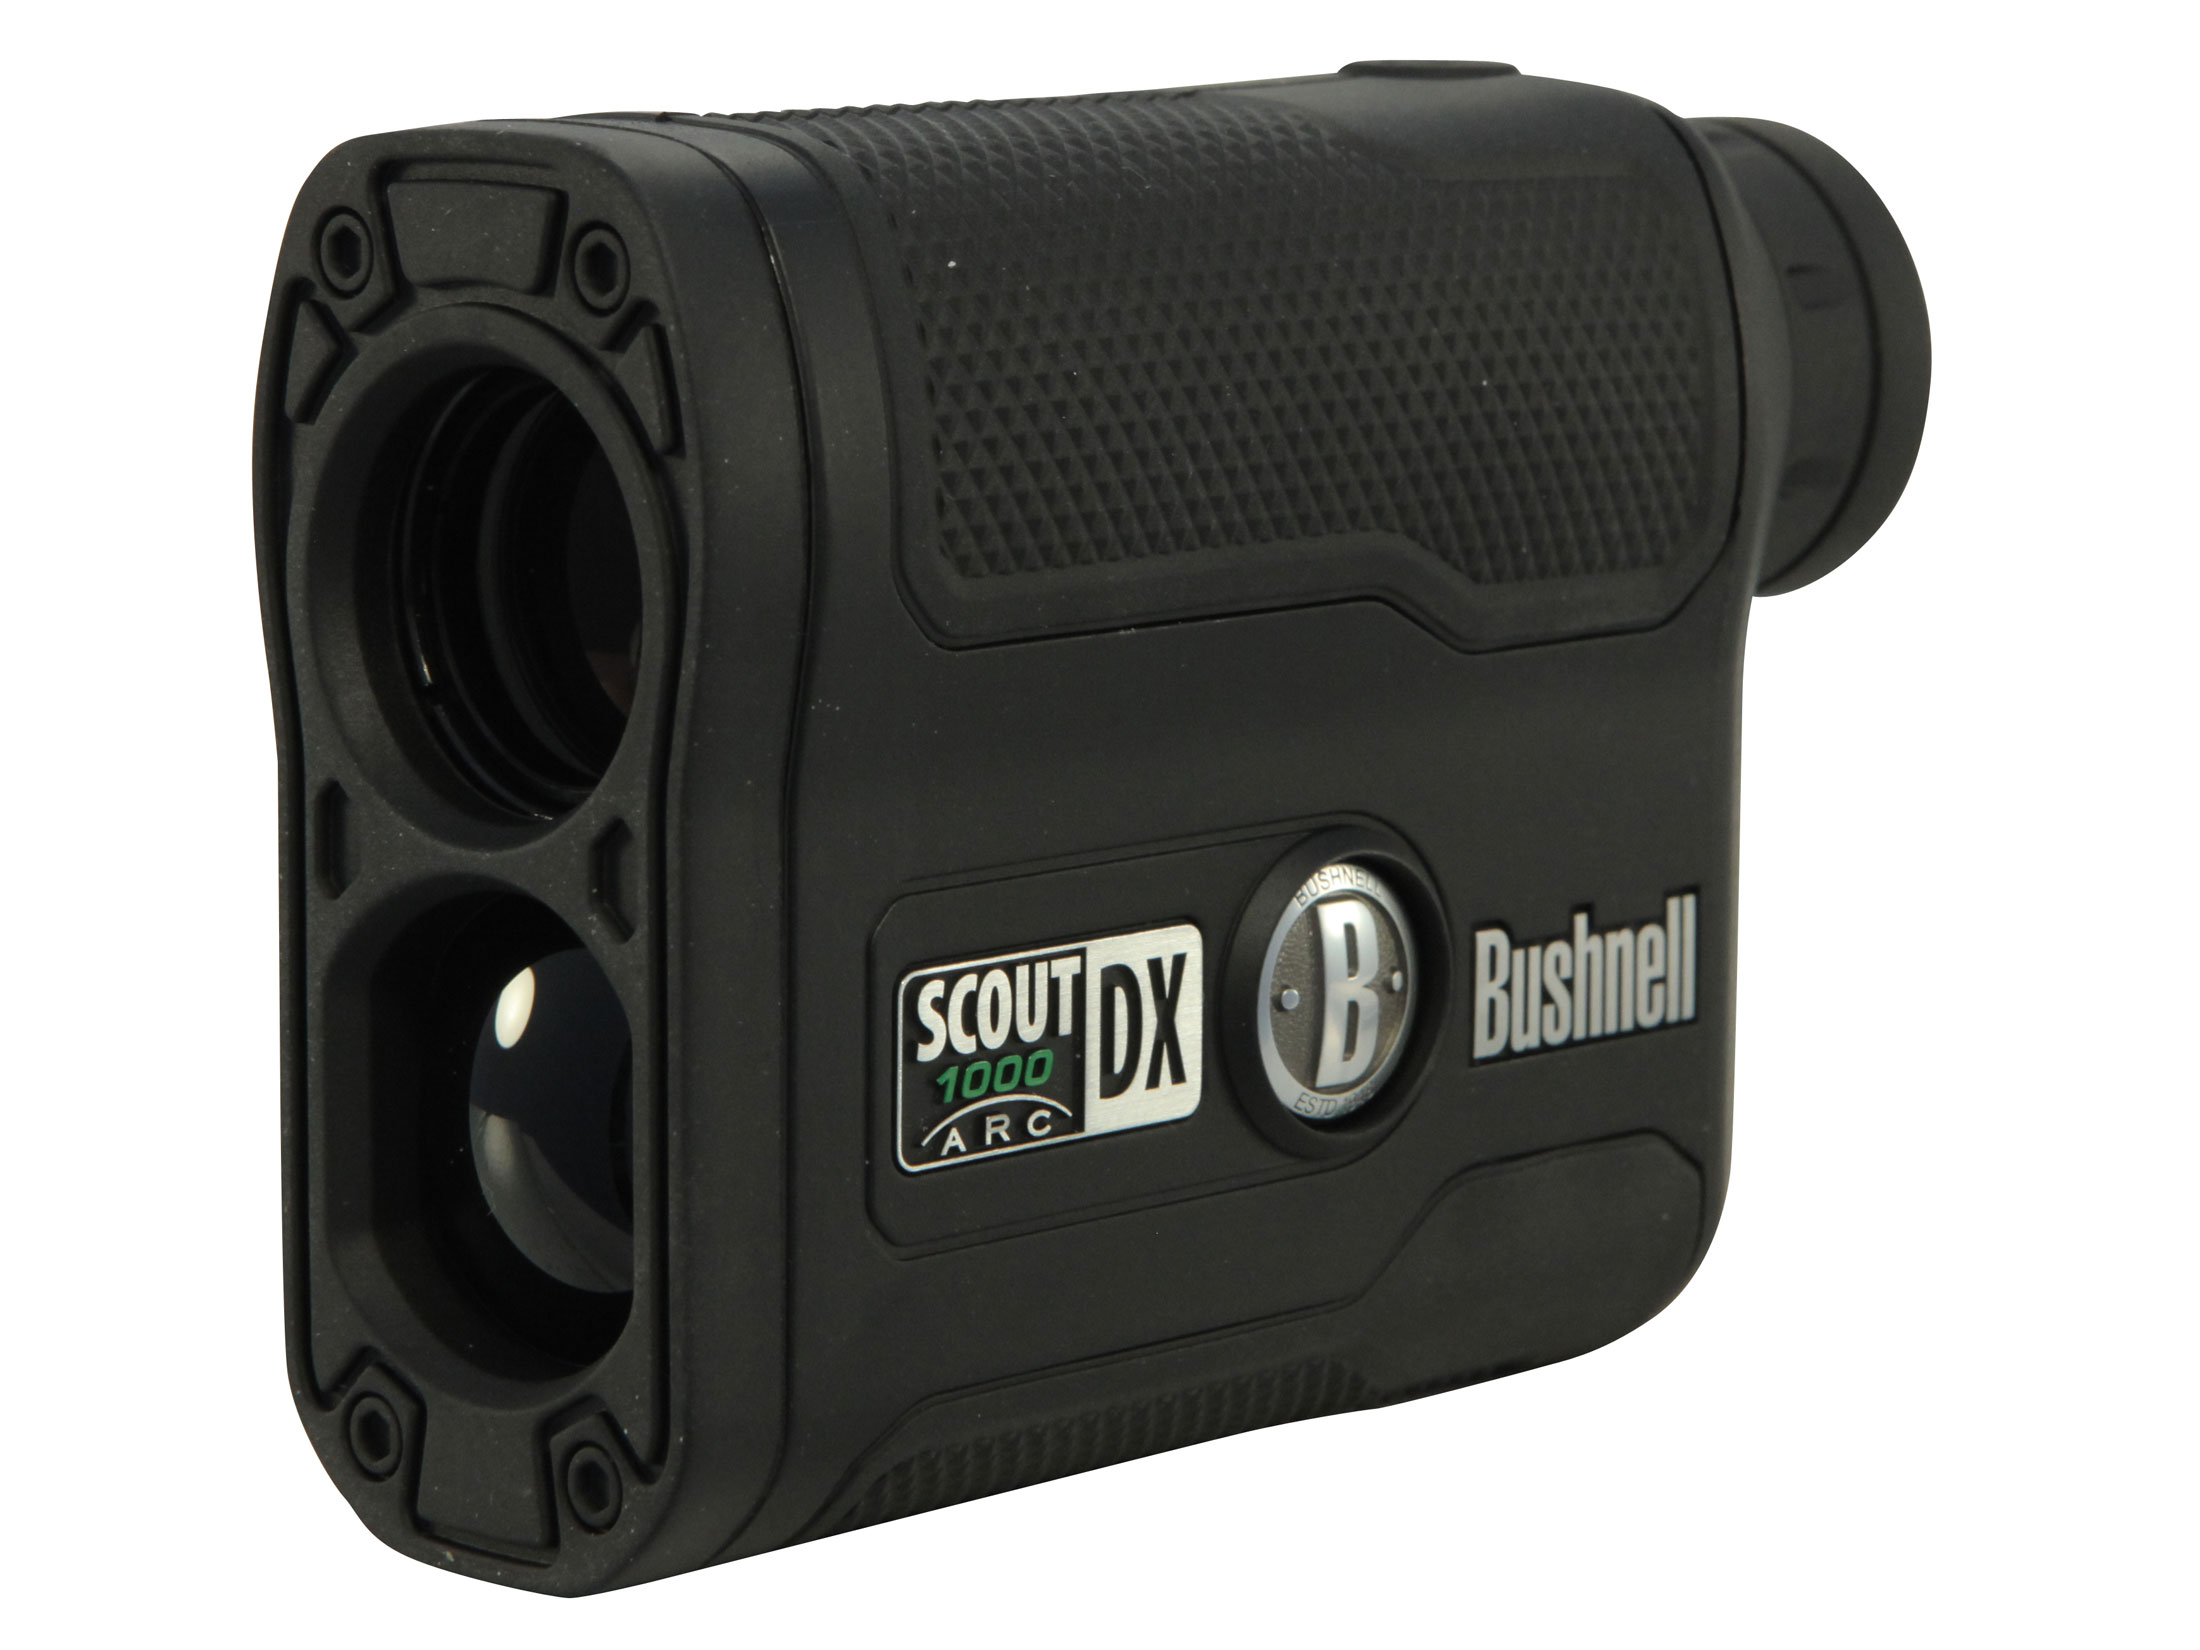 Box for Bushnell Scout DX 1000 ARC 5057926042565 Bushnell High QualityRose Gold EVA Rangefinder Case 